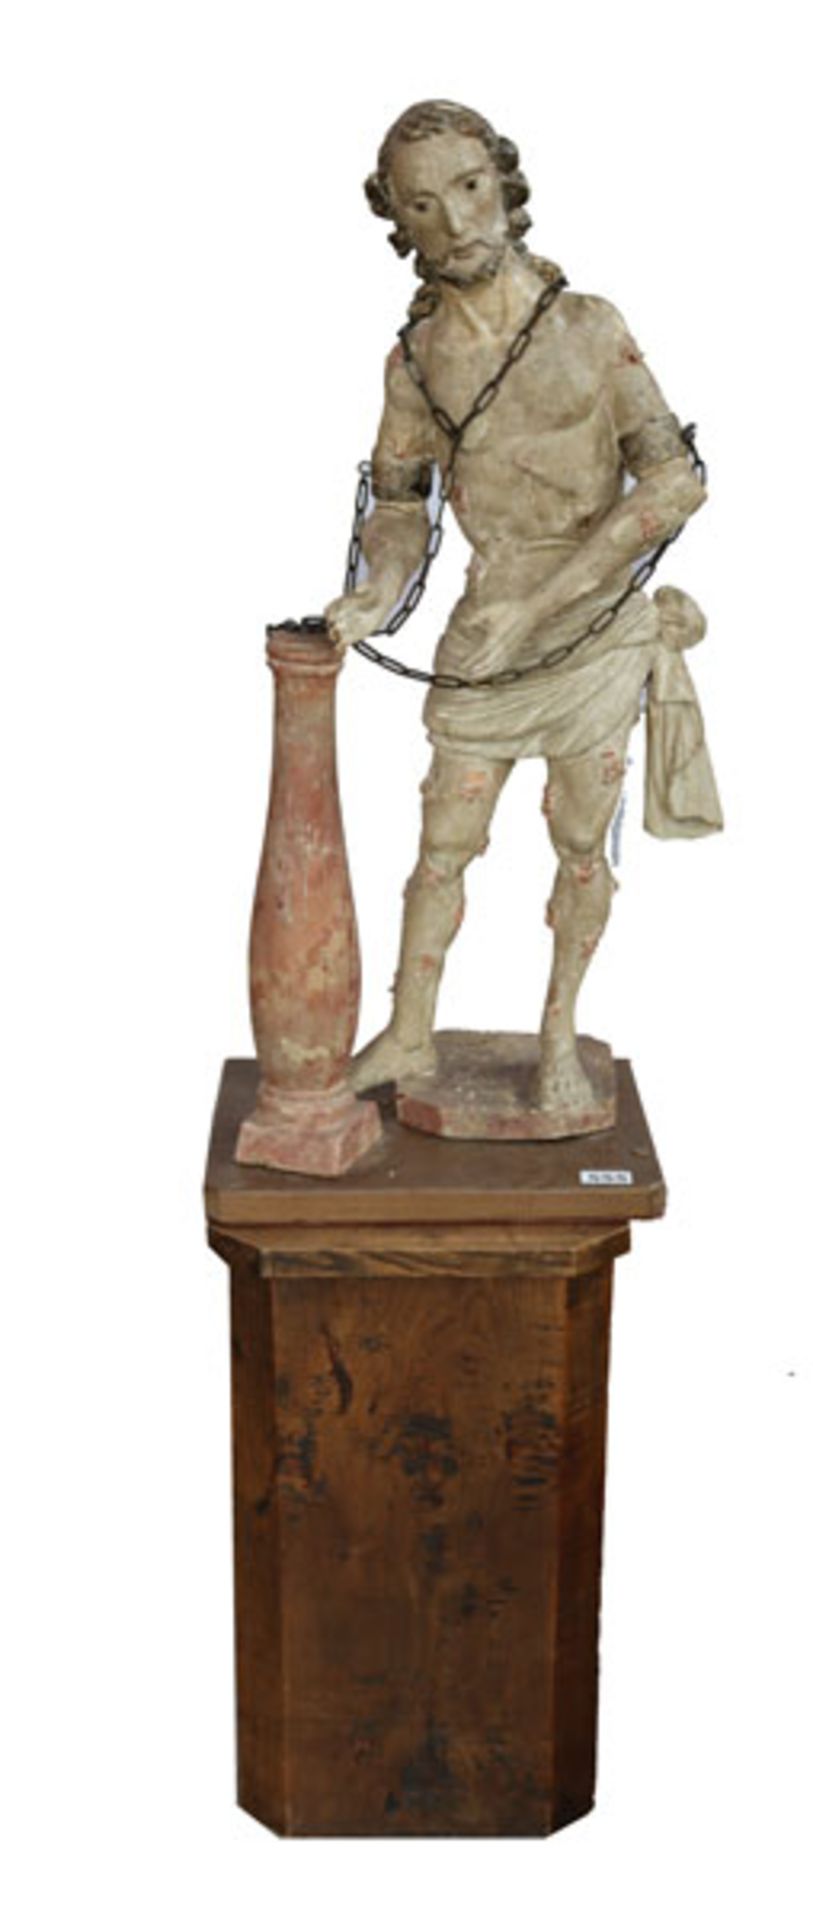 Holz Figurenskulptur 'Gegeiselter Jesus', gefaßt, Fassung beschädigt, wohl 18. Jahrhundert, 80 cm,